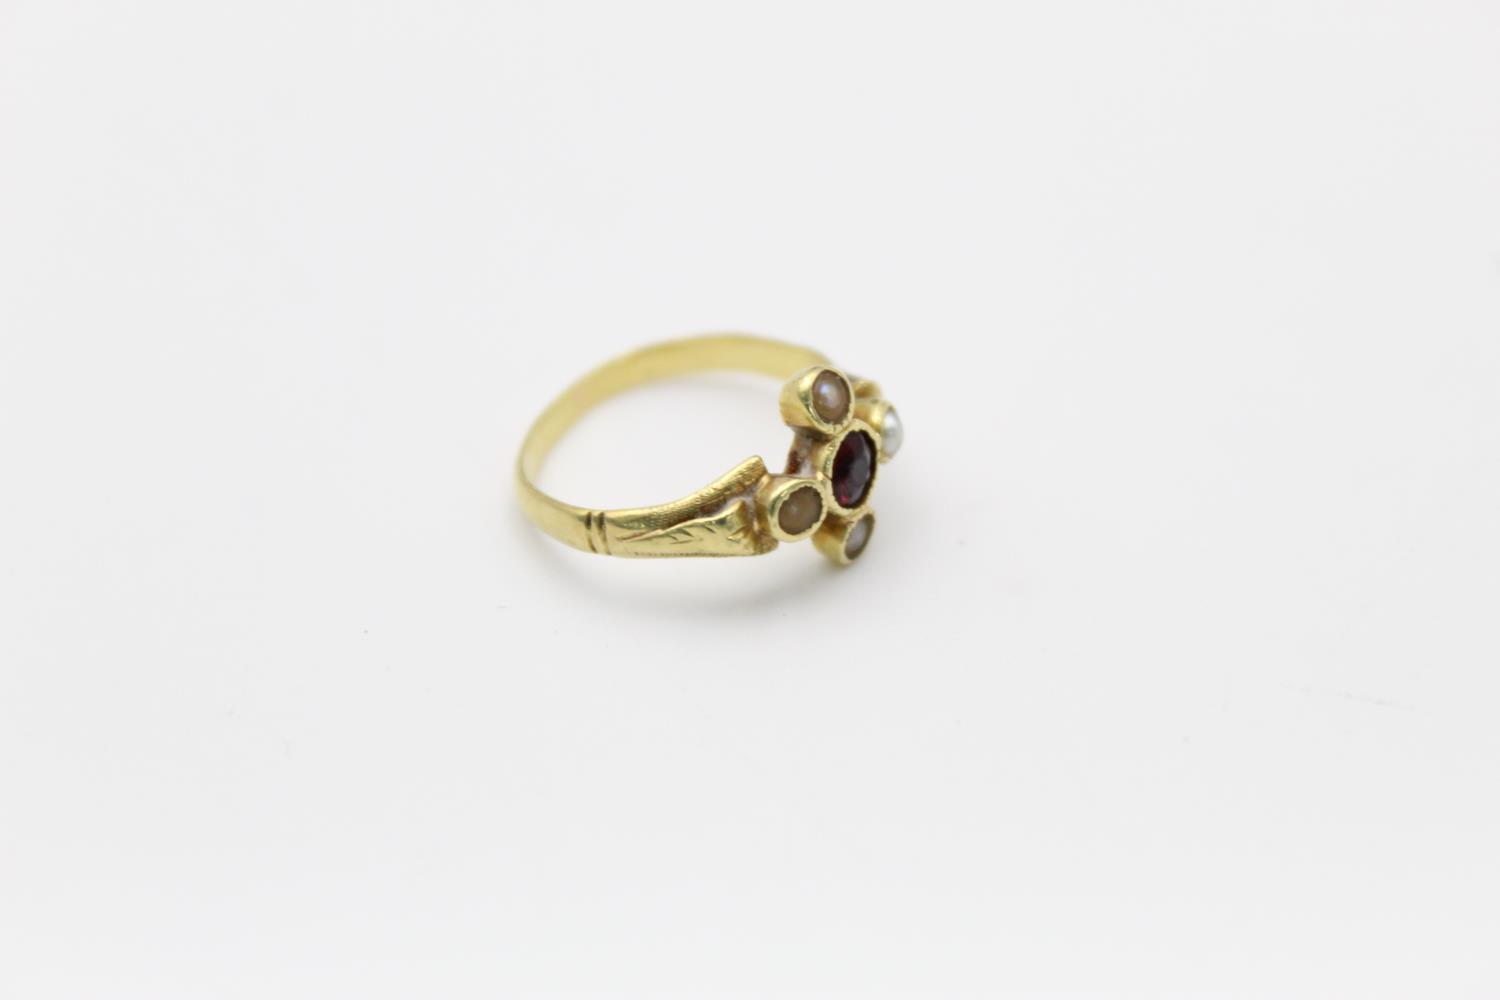 vintage 18ct gold modernist design garnet & seed pearl ring 2.6g Size K - Image 4 of 4